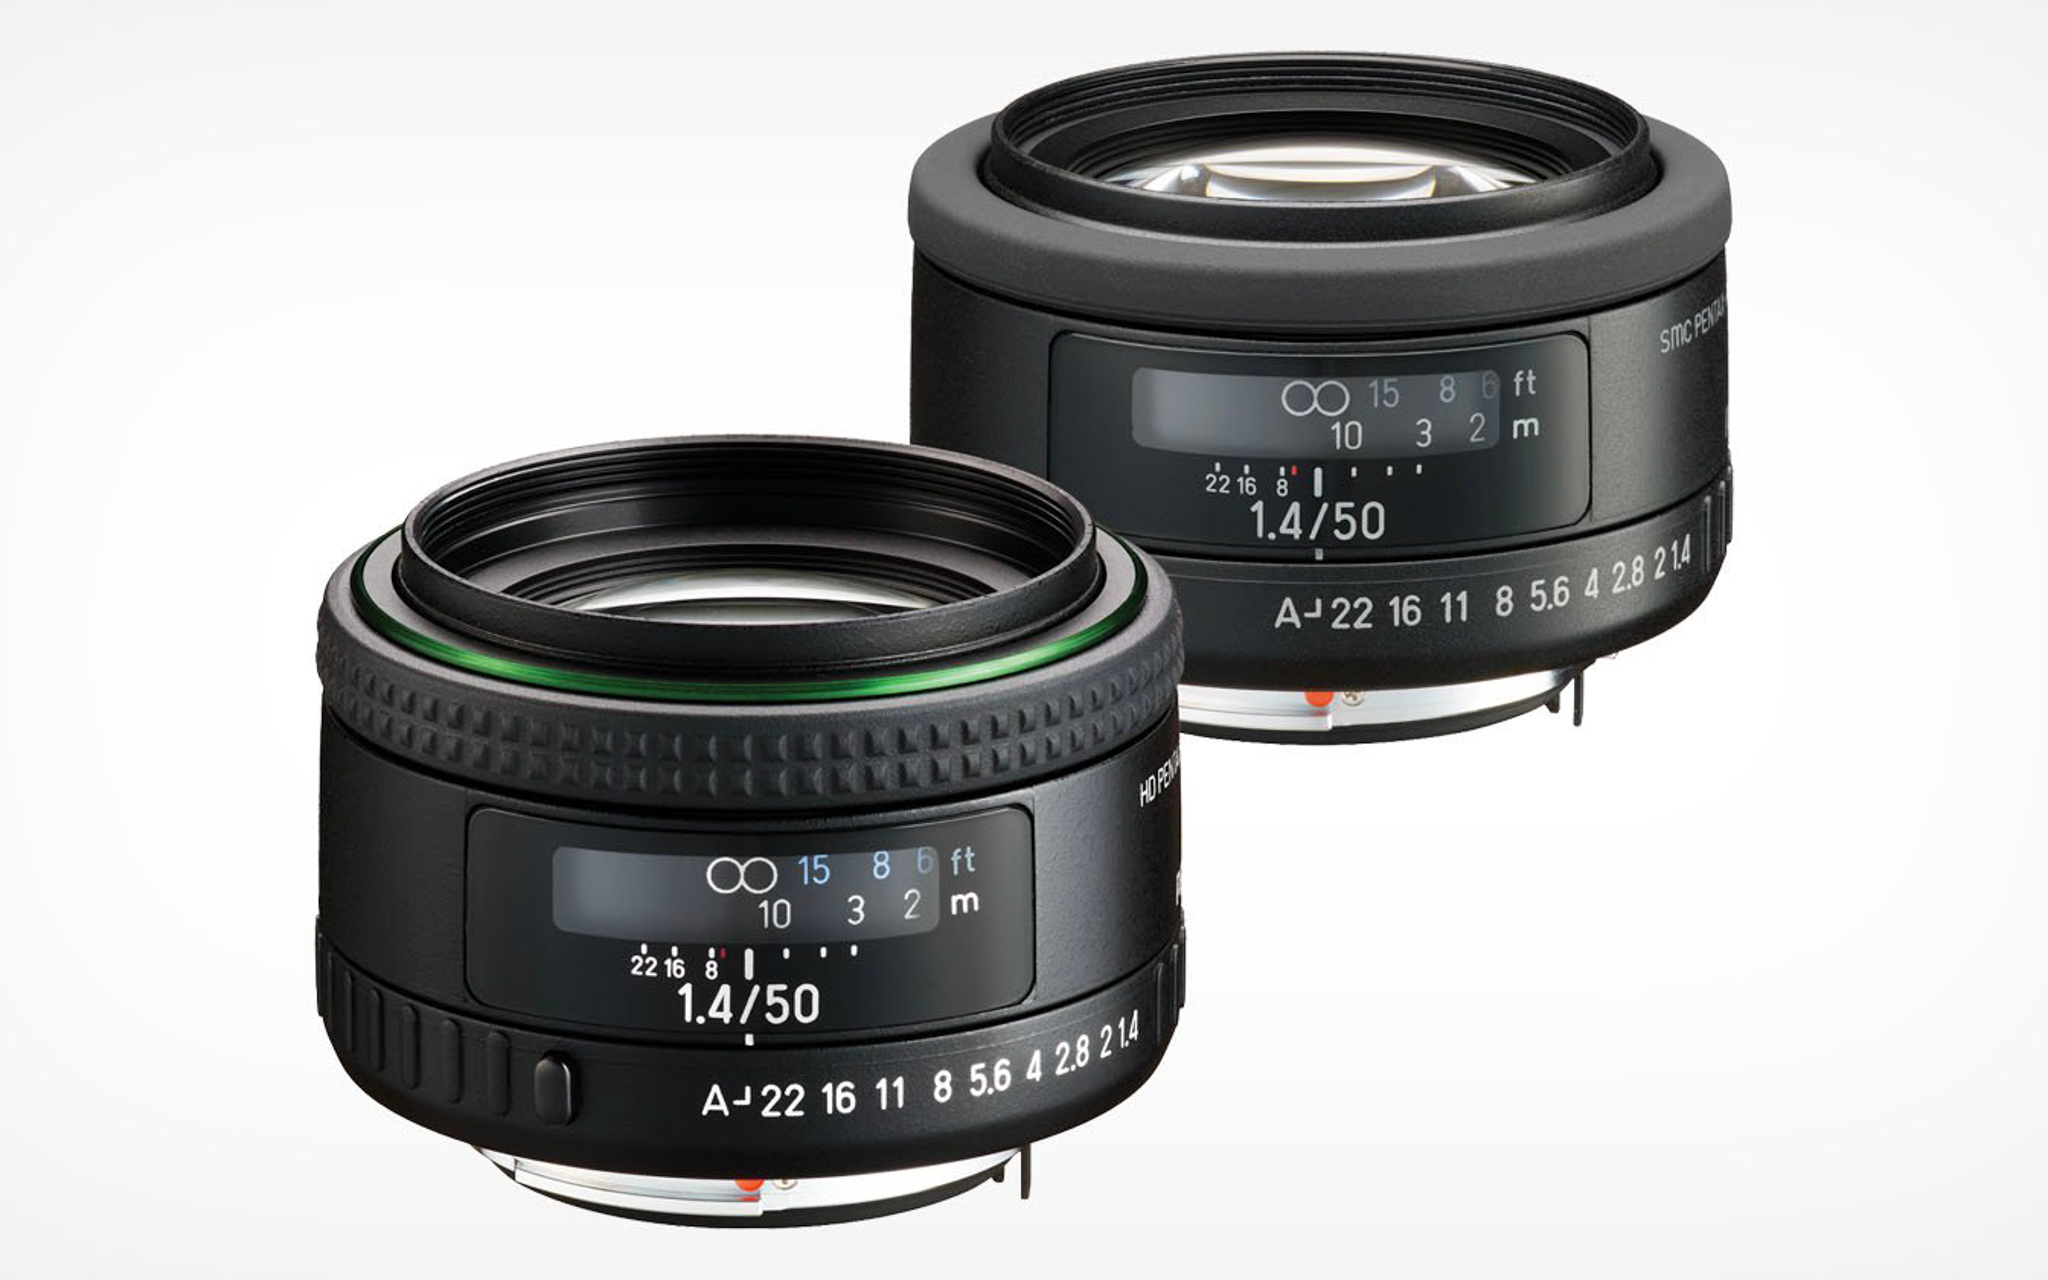 Pentax ra mắt 2 chiếc ống kính 50mm f/1.4 gần như giống nhau nhưng cho ảnh "khác nhau"